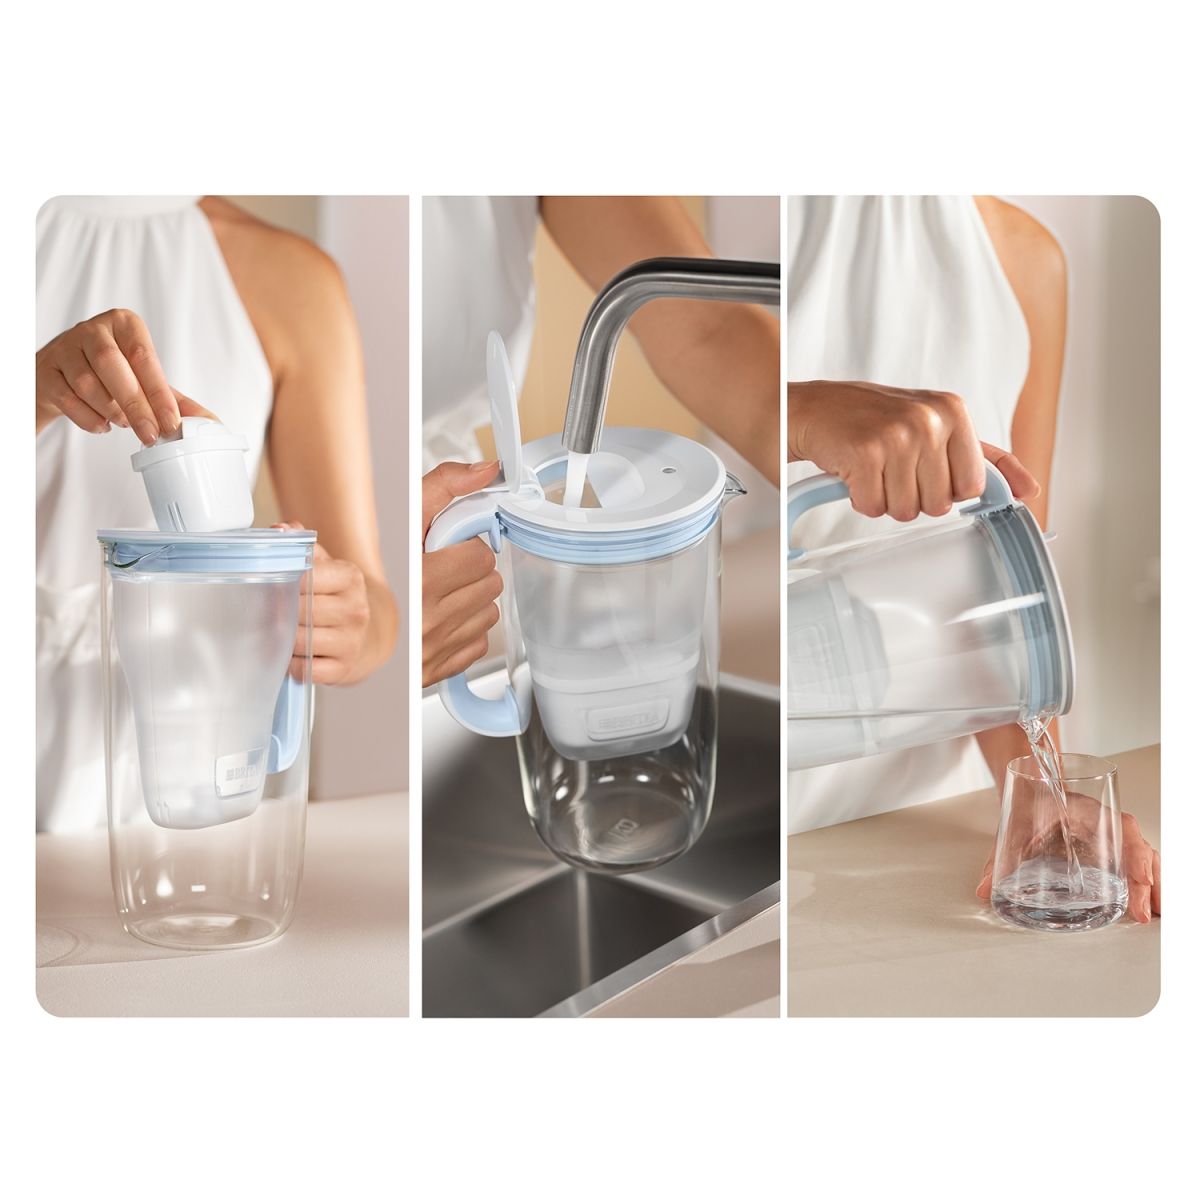 BRITA GLASS One, stekleni vrč za filtriranje vode 2,5 L